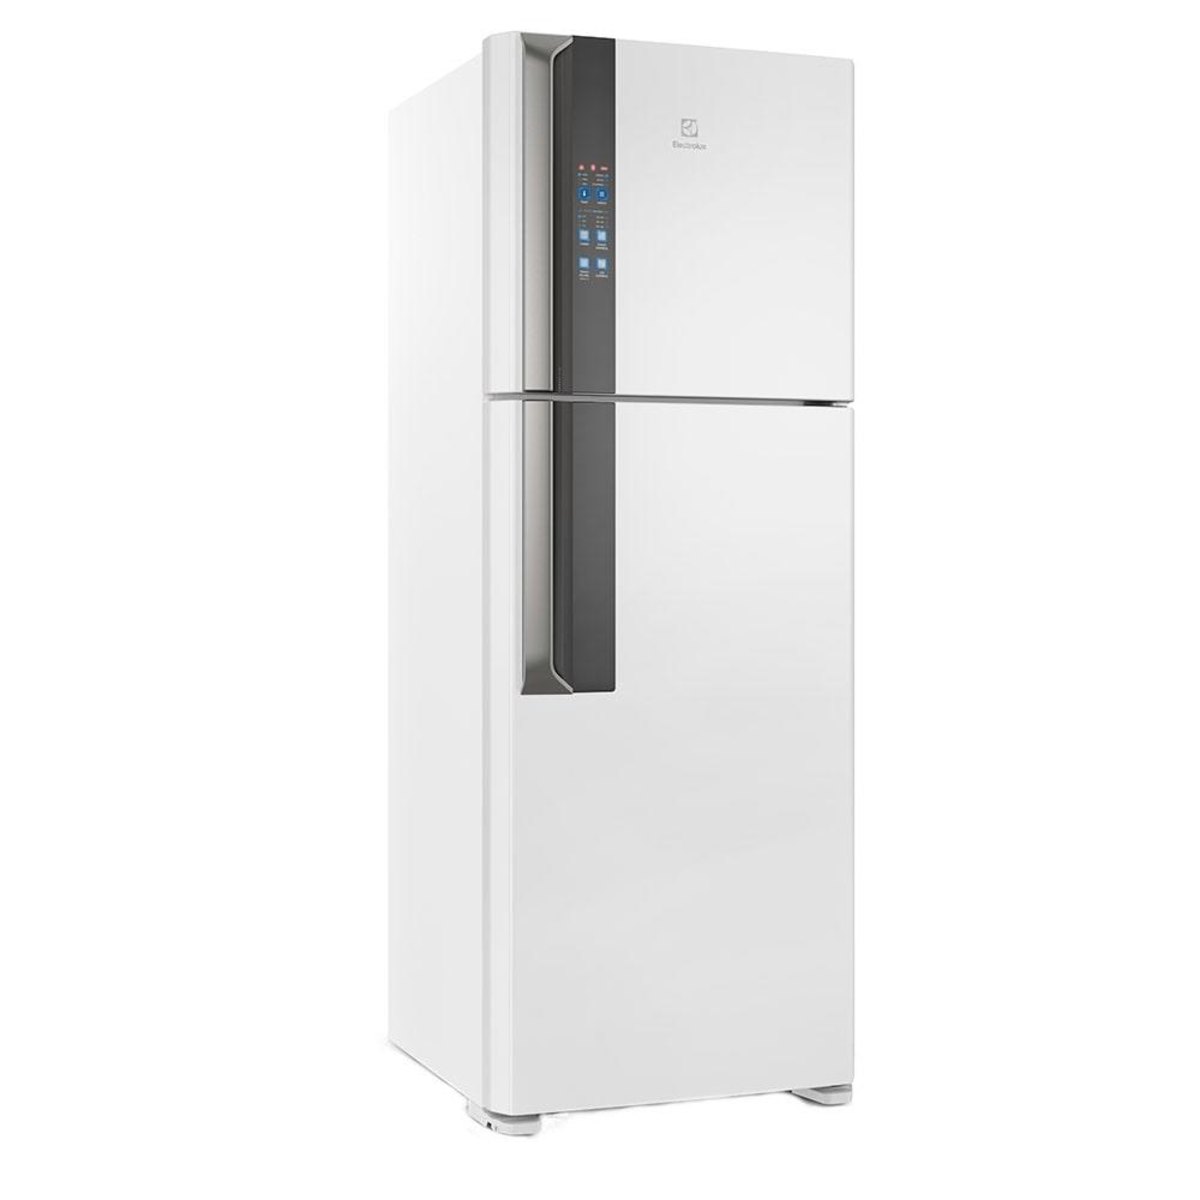 Geladeira/Refrigerador Electrolux Frost Free 2 Portas Top Freezer Df56 474 Litros Branco - 110V